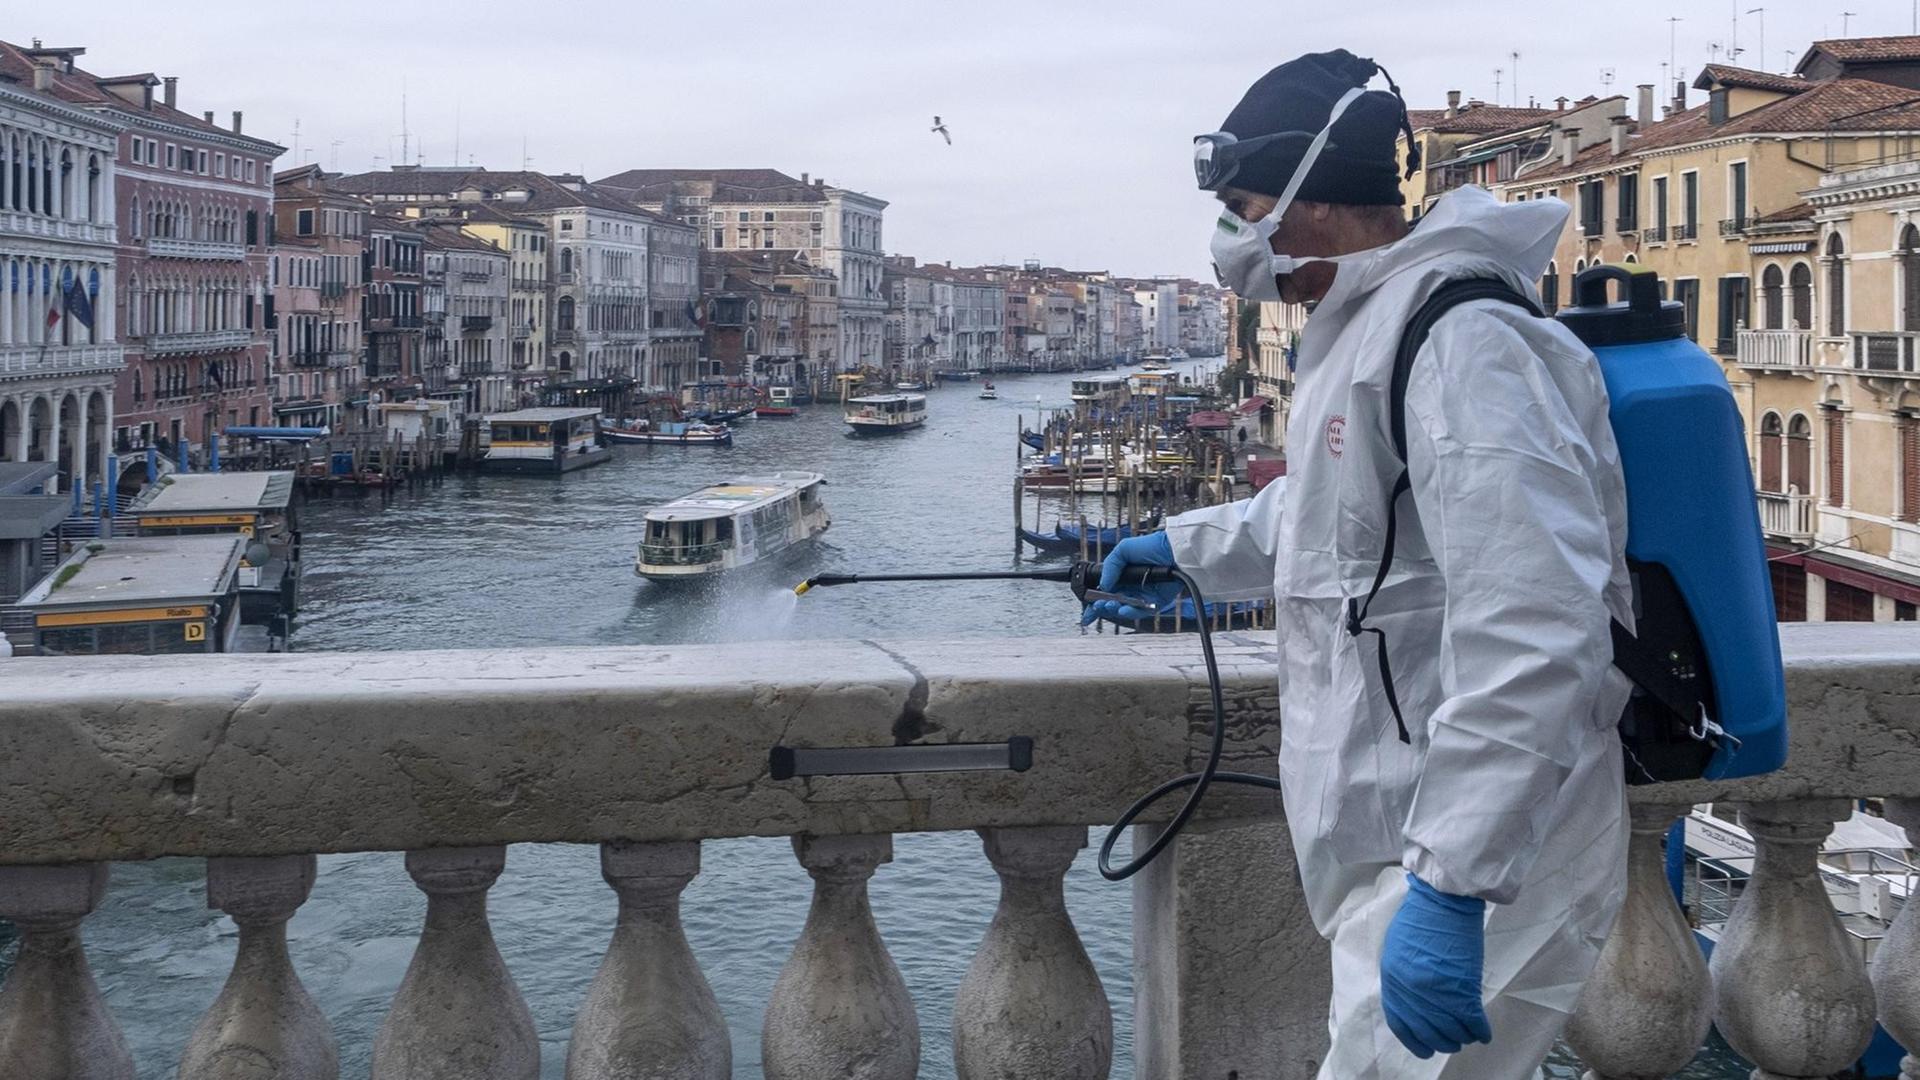 Ein Mann in Schutzanzug desinfiziert den Marmor auf der Rialto-Brücke in Venedig. Im Hintergrund ist der Canal Grande und Häuserfassaden zu sehen.